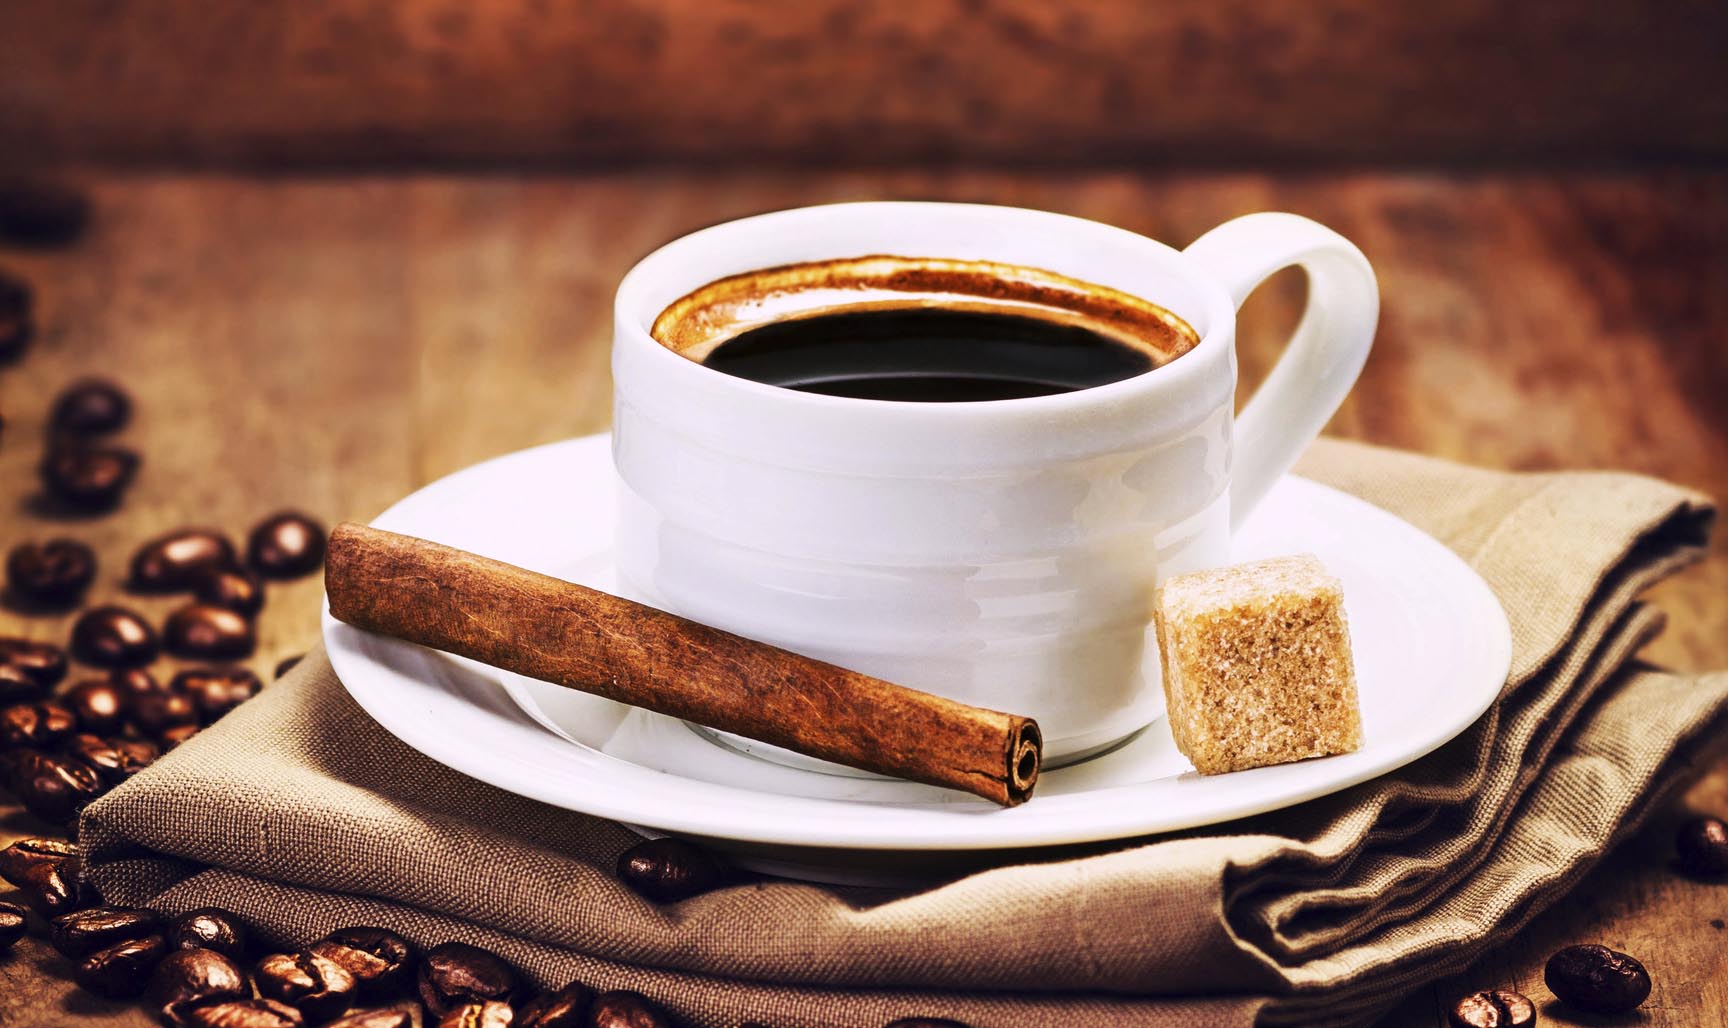 El Sumario - Un estudio realizado por investigadores de la Universidad de Alabama reveló que el consumo diario de cafeína impacta sobre los síntomas de molestia corporal